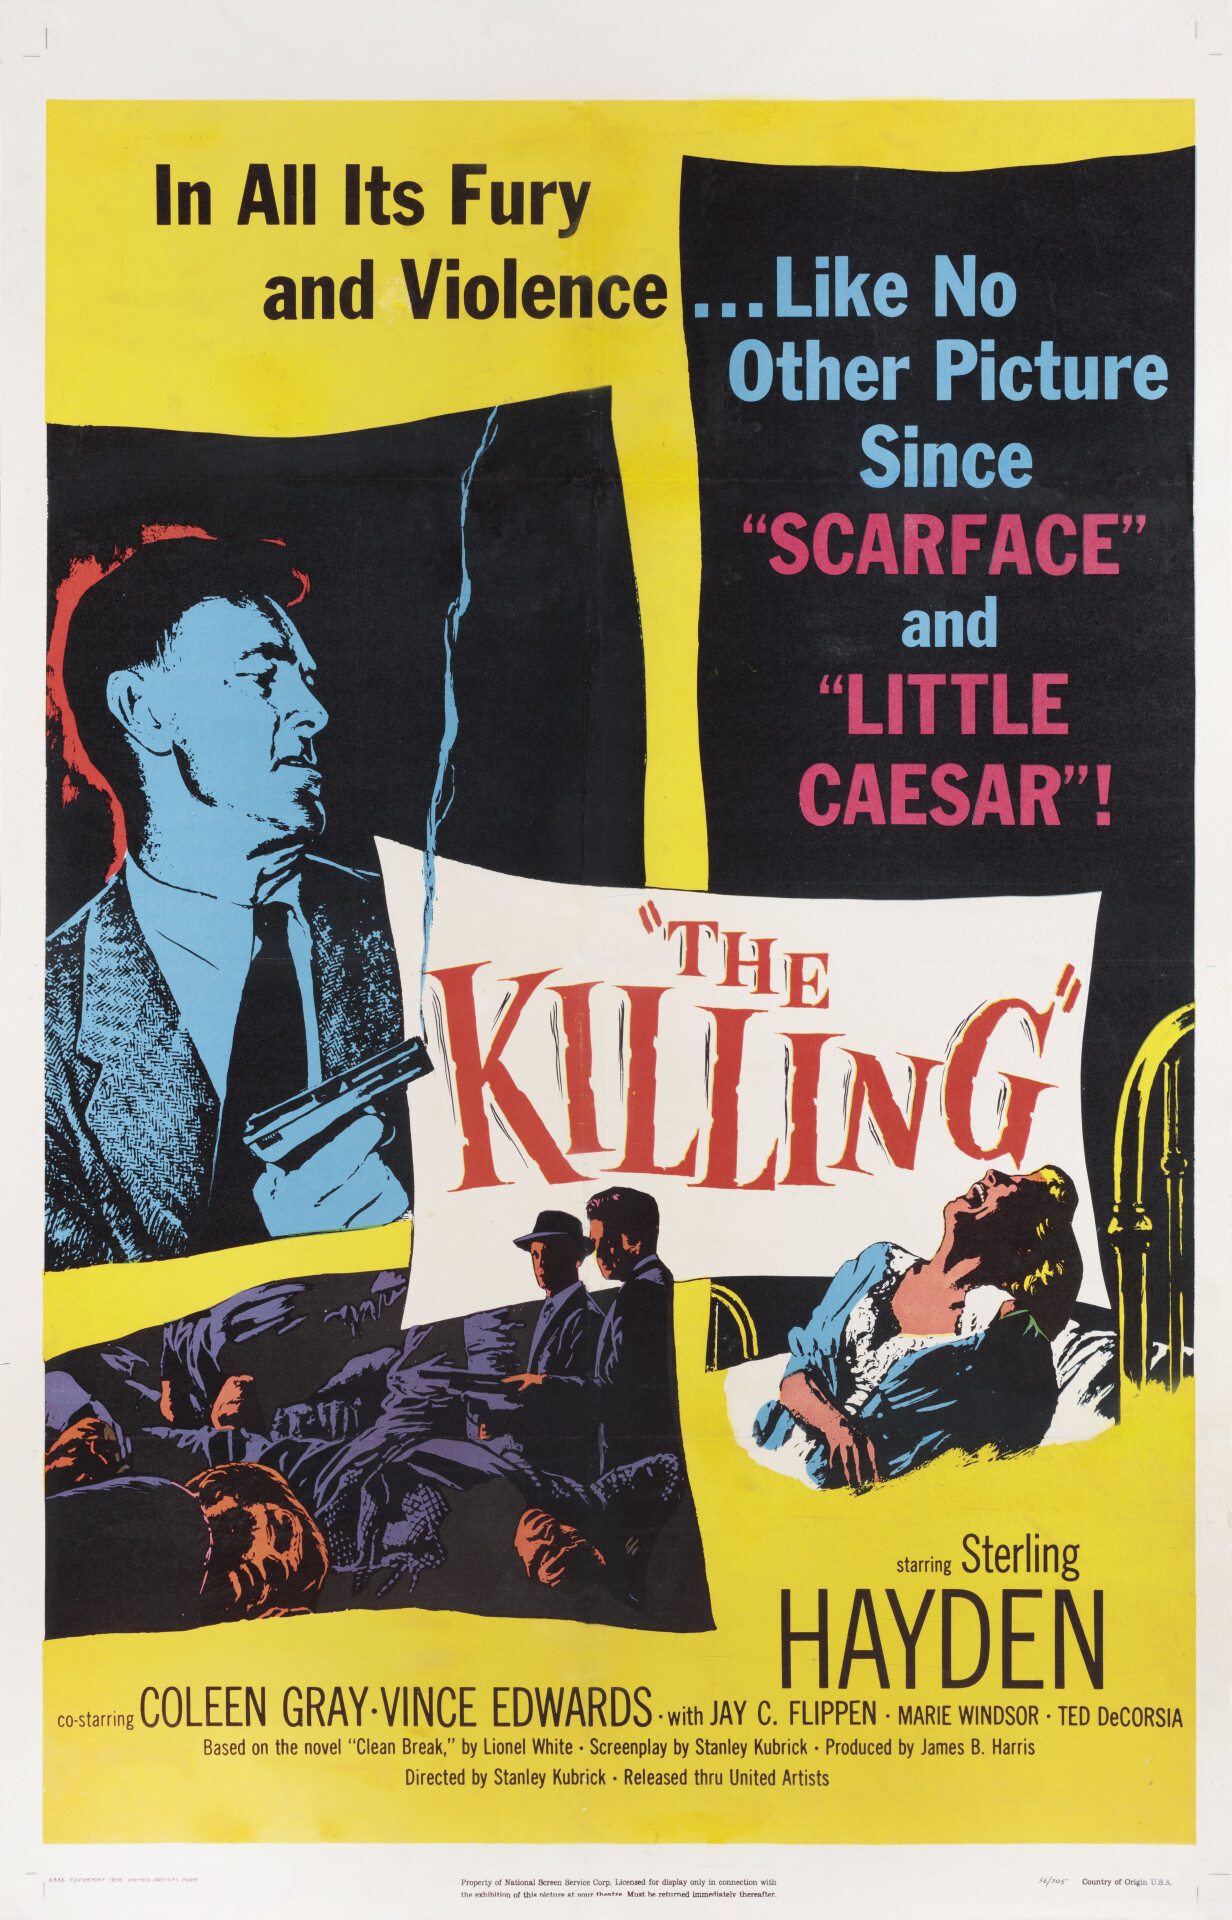 Убийство (The Killing, 1956), режиссёр Стэнли Кубрик, американский постер к фильму (графический дизайн, 1956 год)